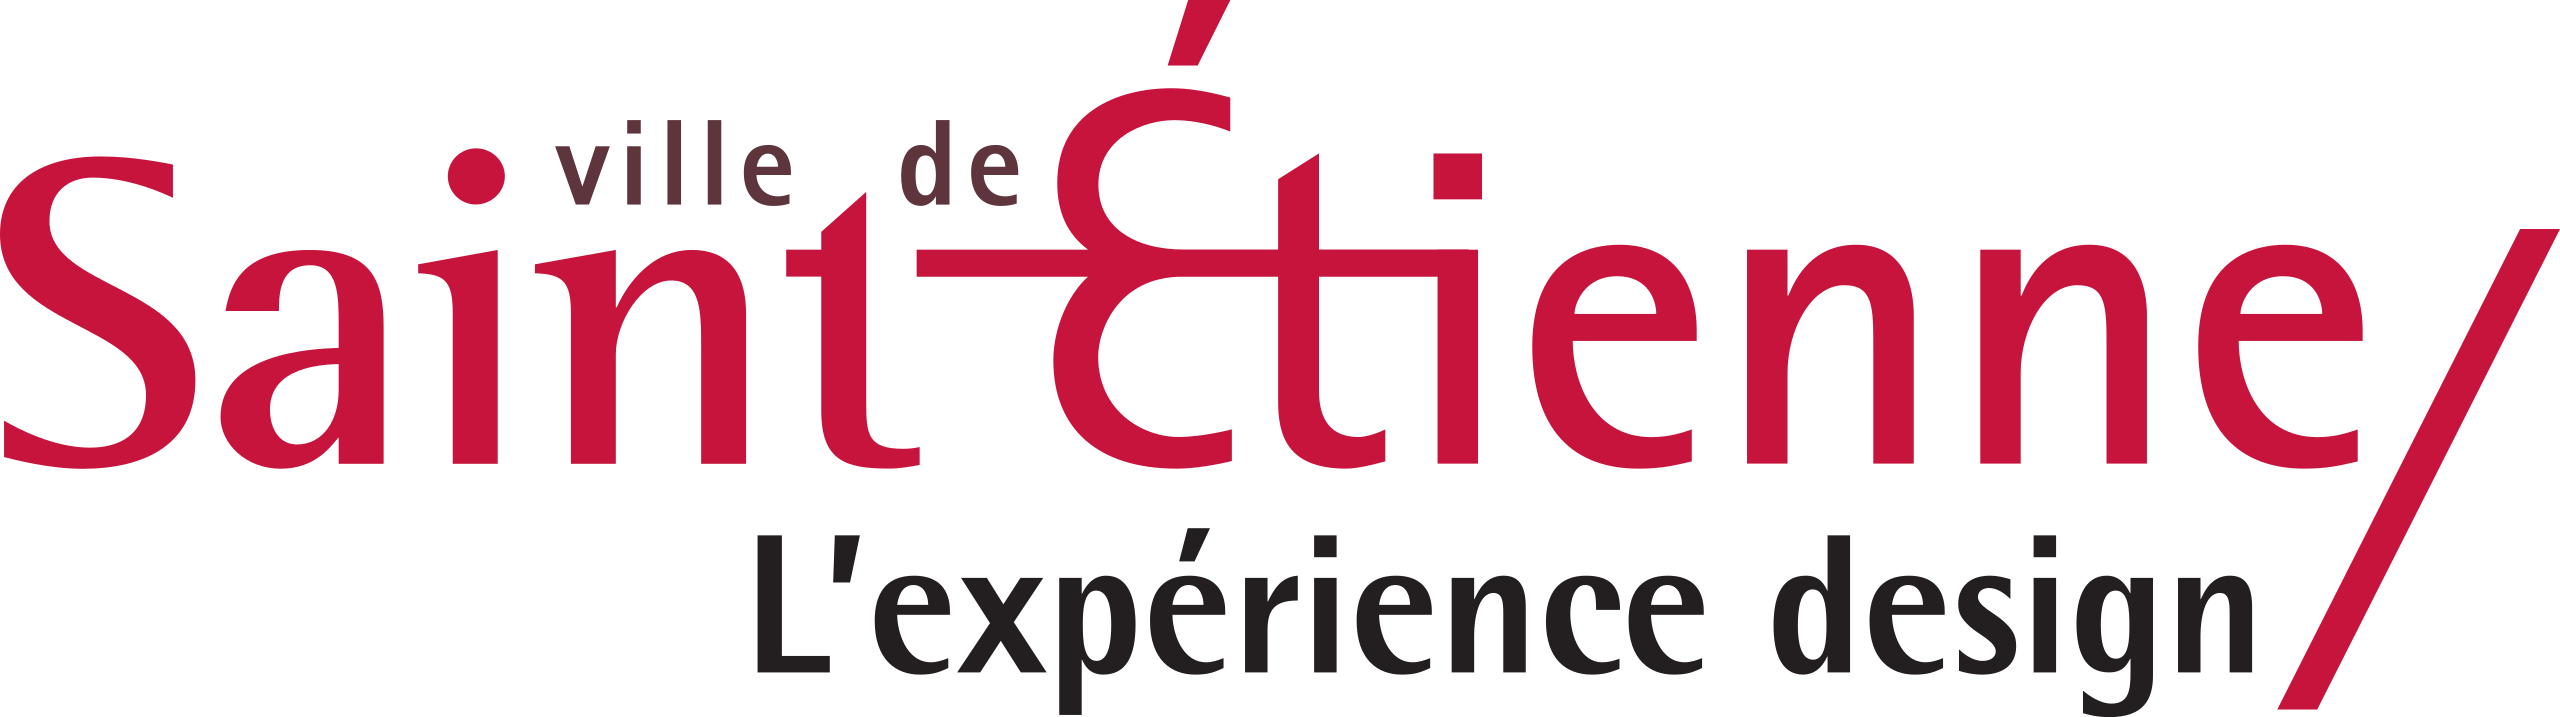 Logo_Saint_Etienne.png